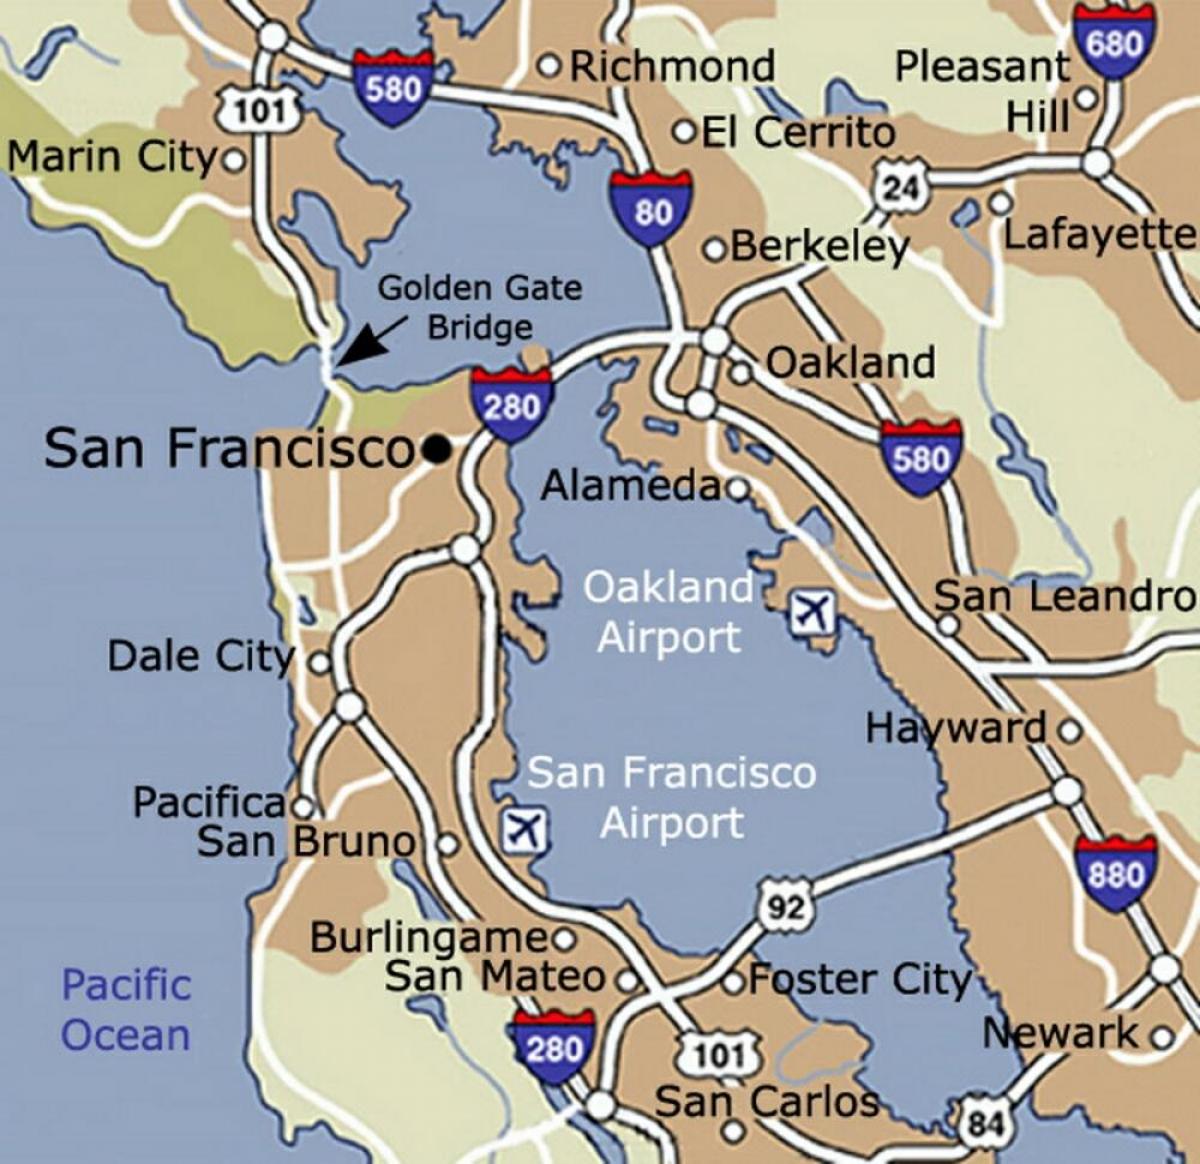 מפה של נמל התעופה של סן פרנסיסקו וסביבתה